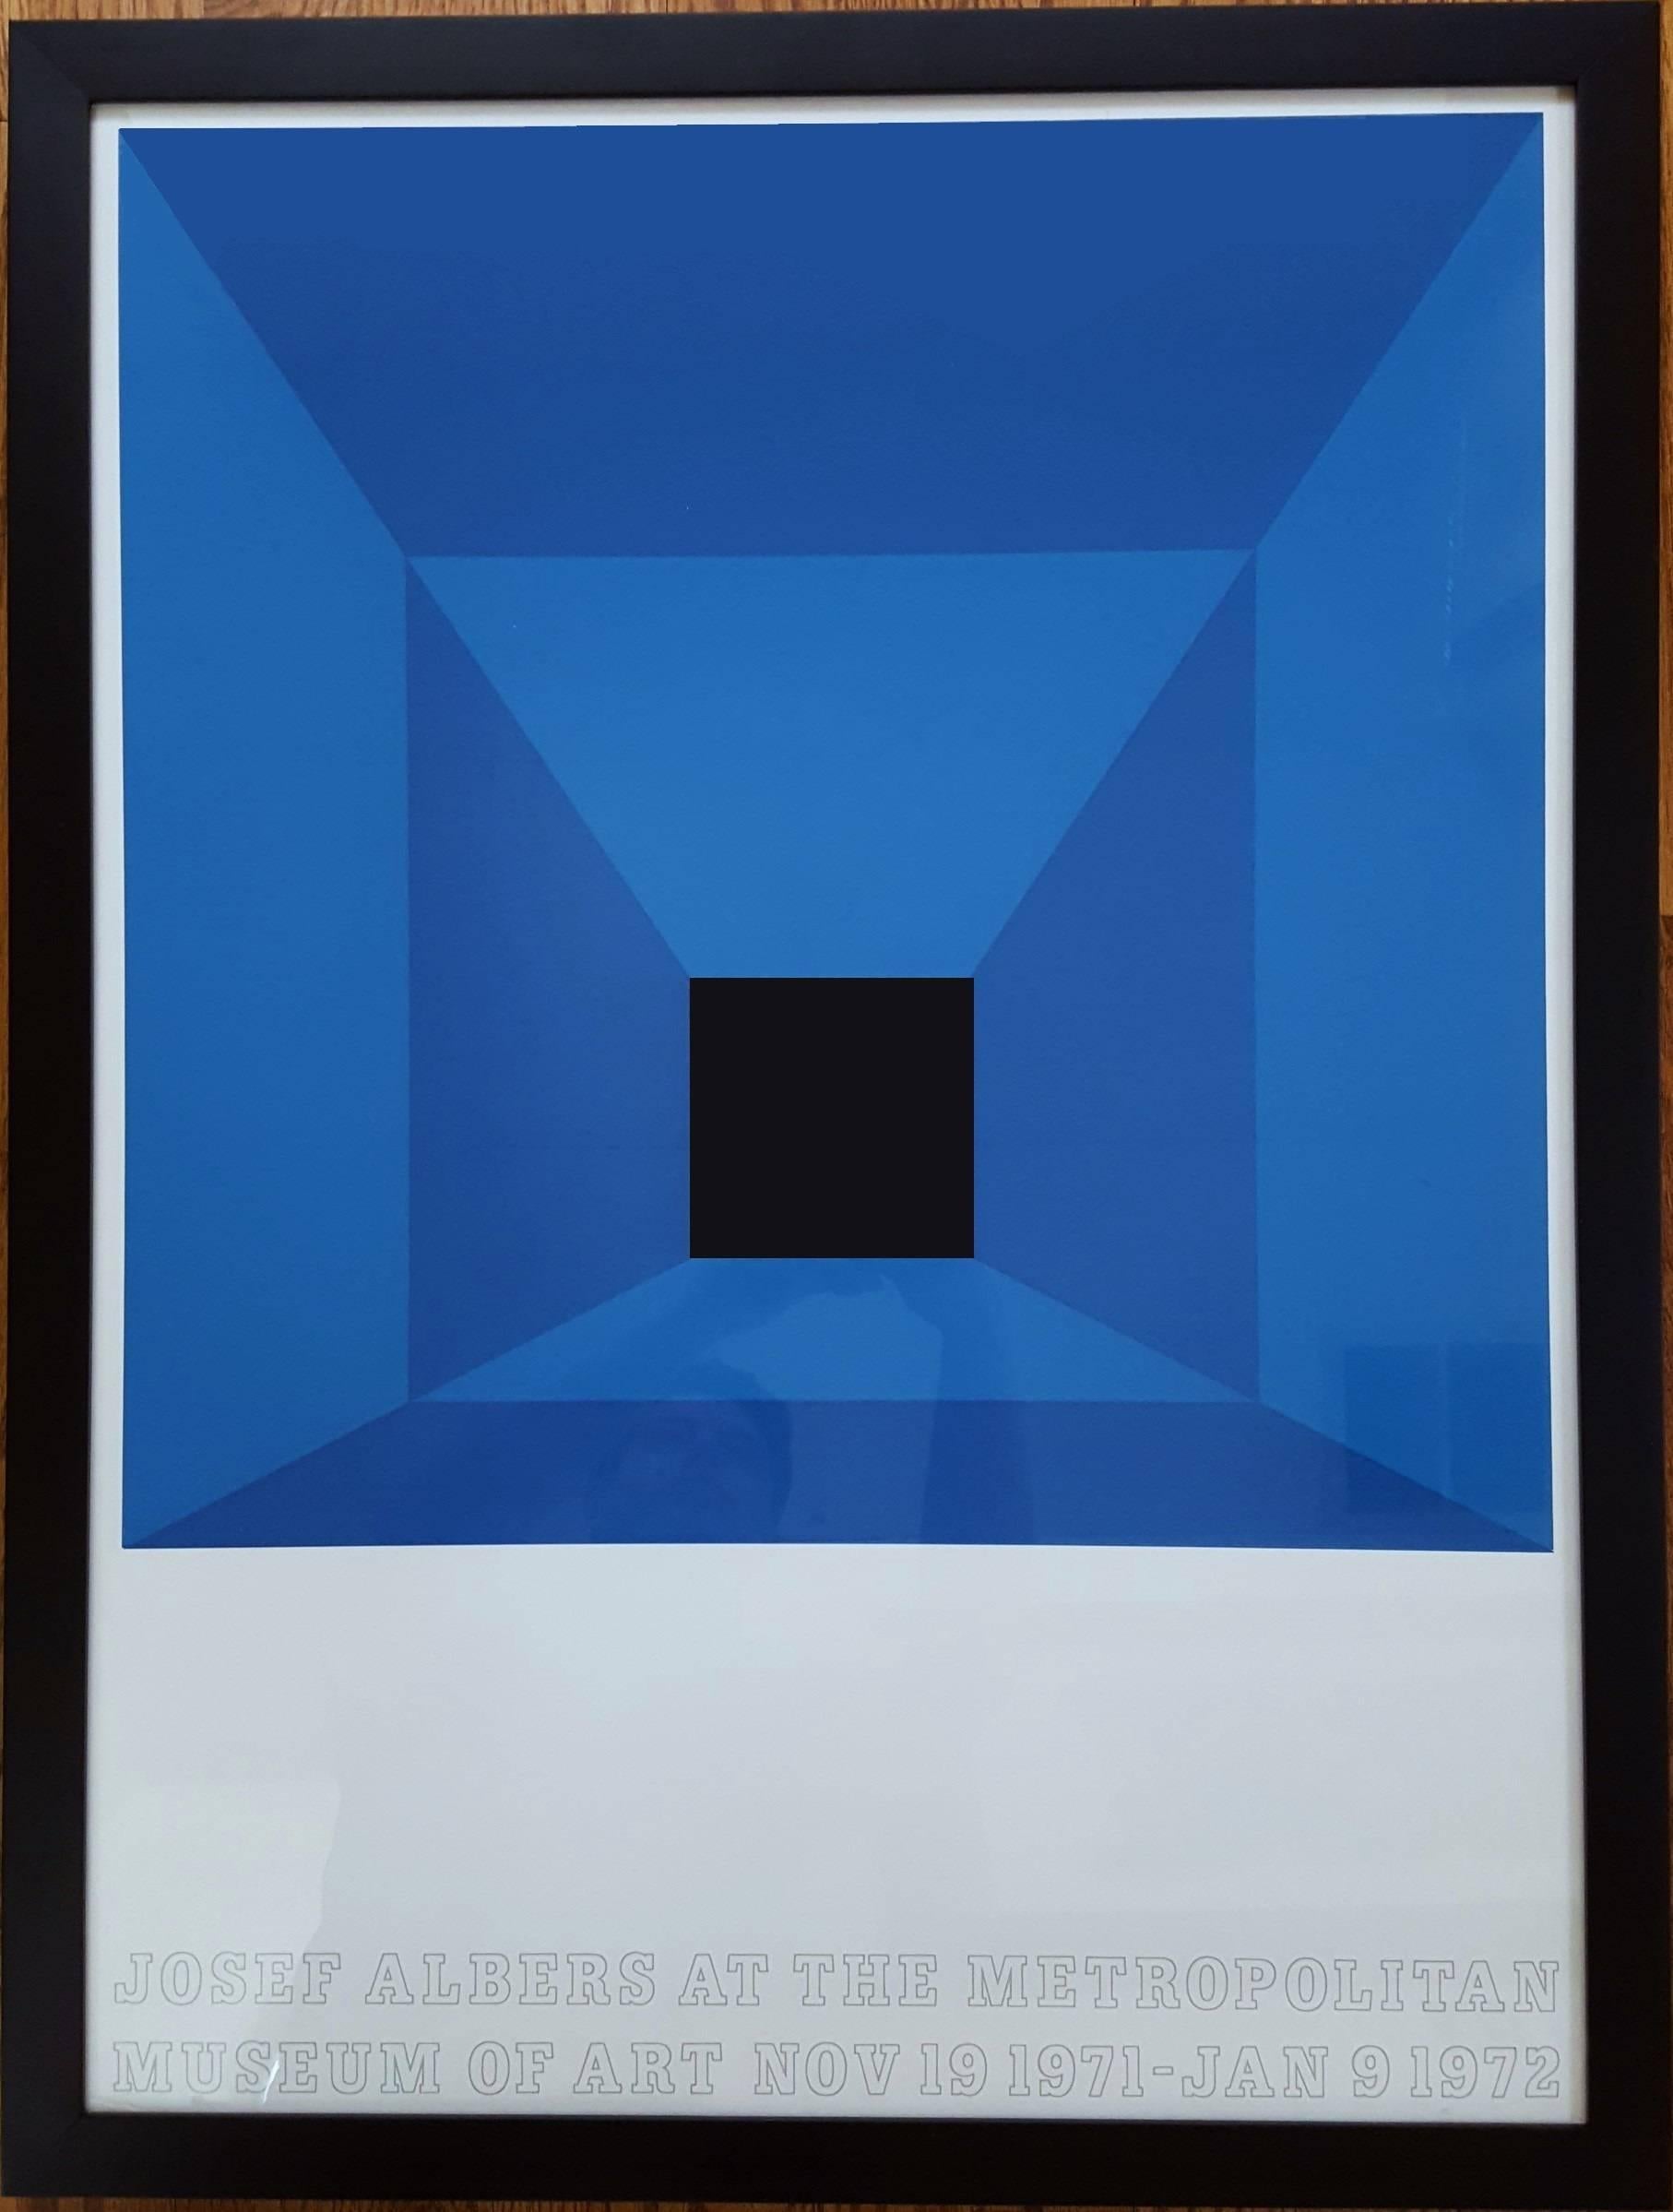 Original Siebdruck-Ausstellungsplakat des deutsch-amerikanischen Künstlers Josef Albers (1888-1976) mit dem Titel „Josef Albers im Metropolitan Museum of Art“:: 1971. Es wurde in einer signierten und nummerierten Auflage von 50 Exemplaren